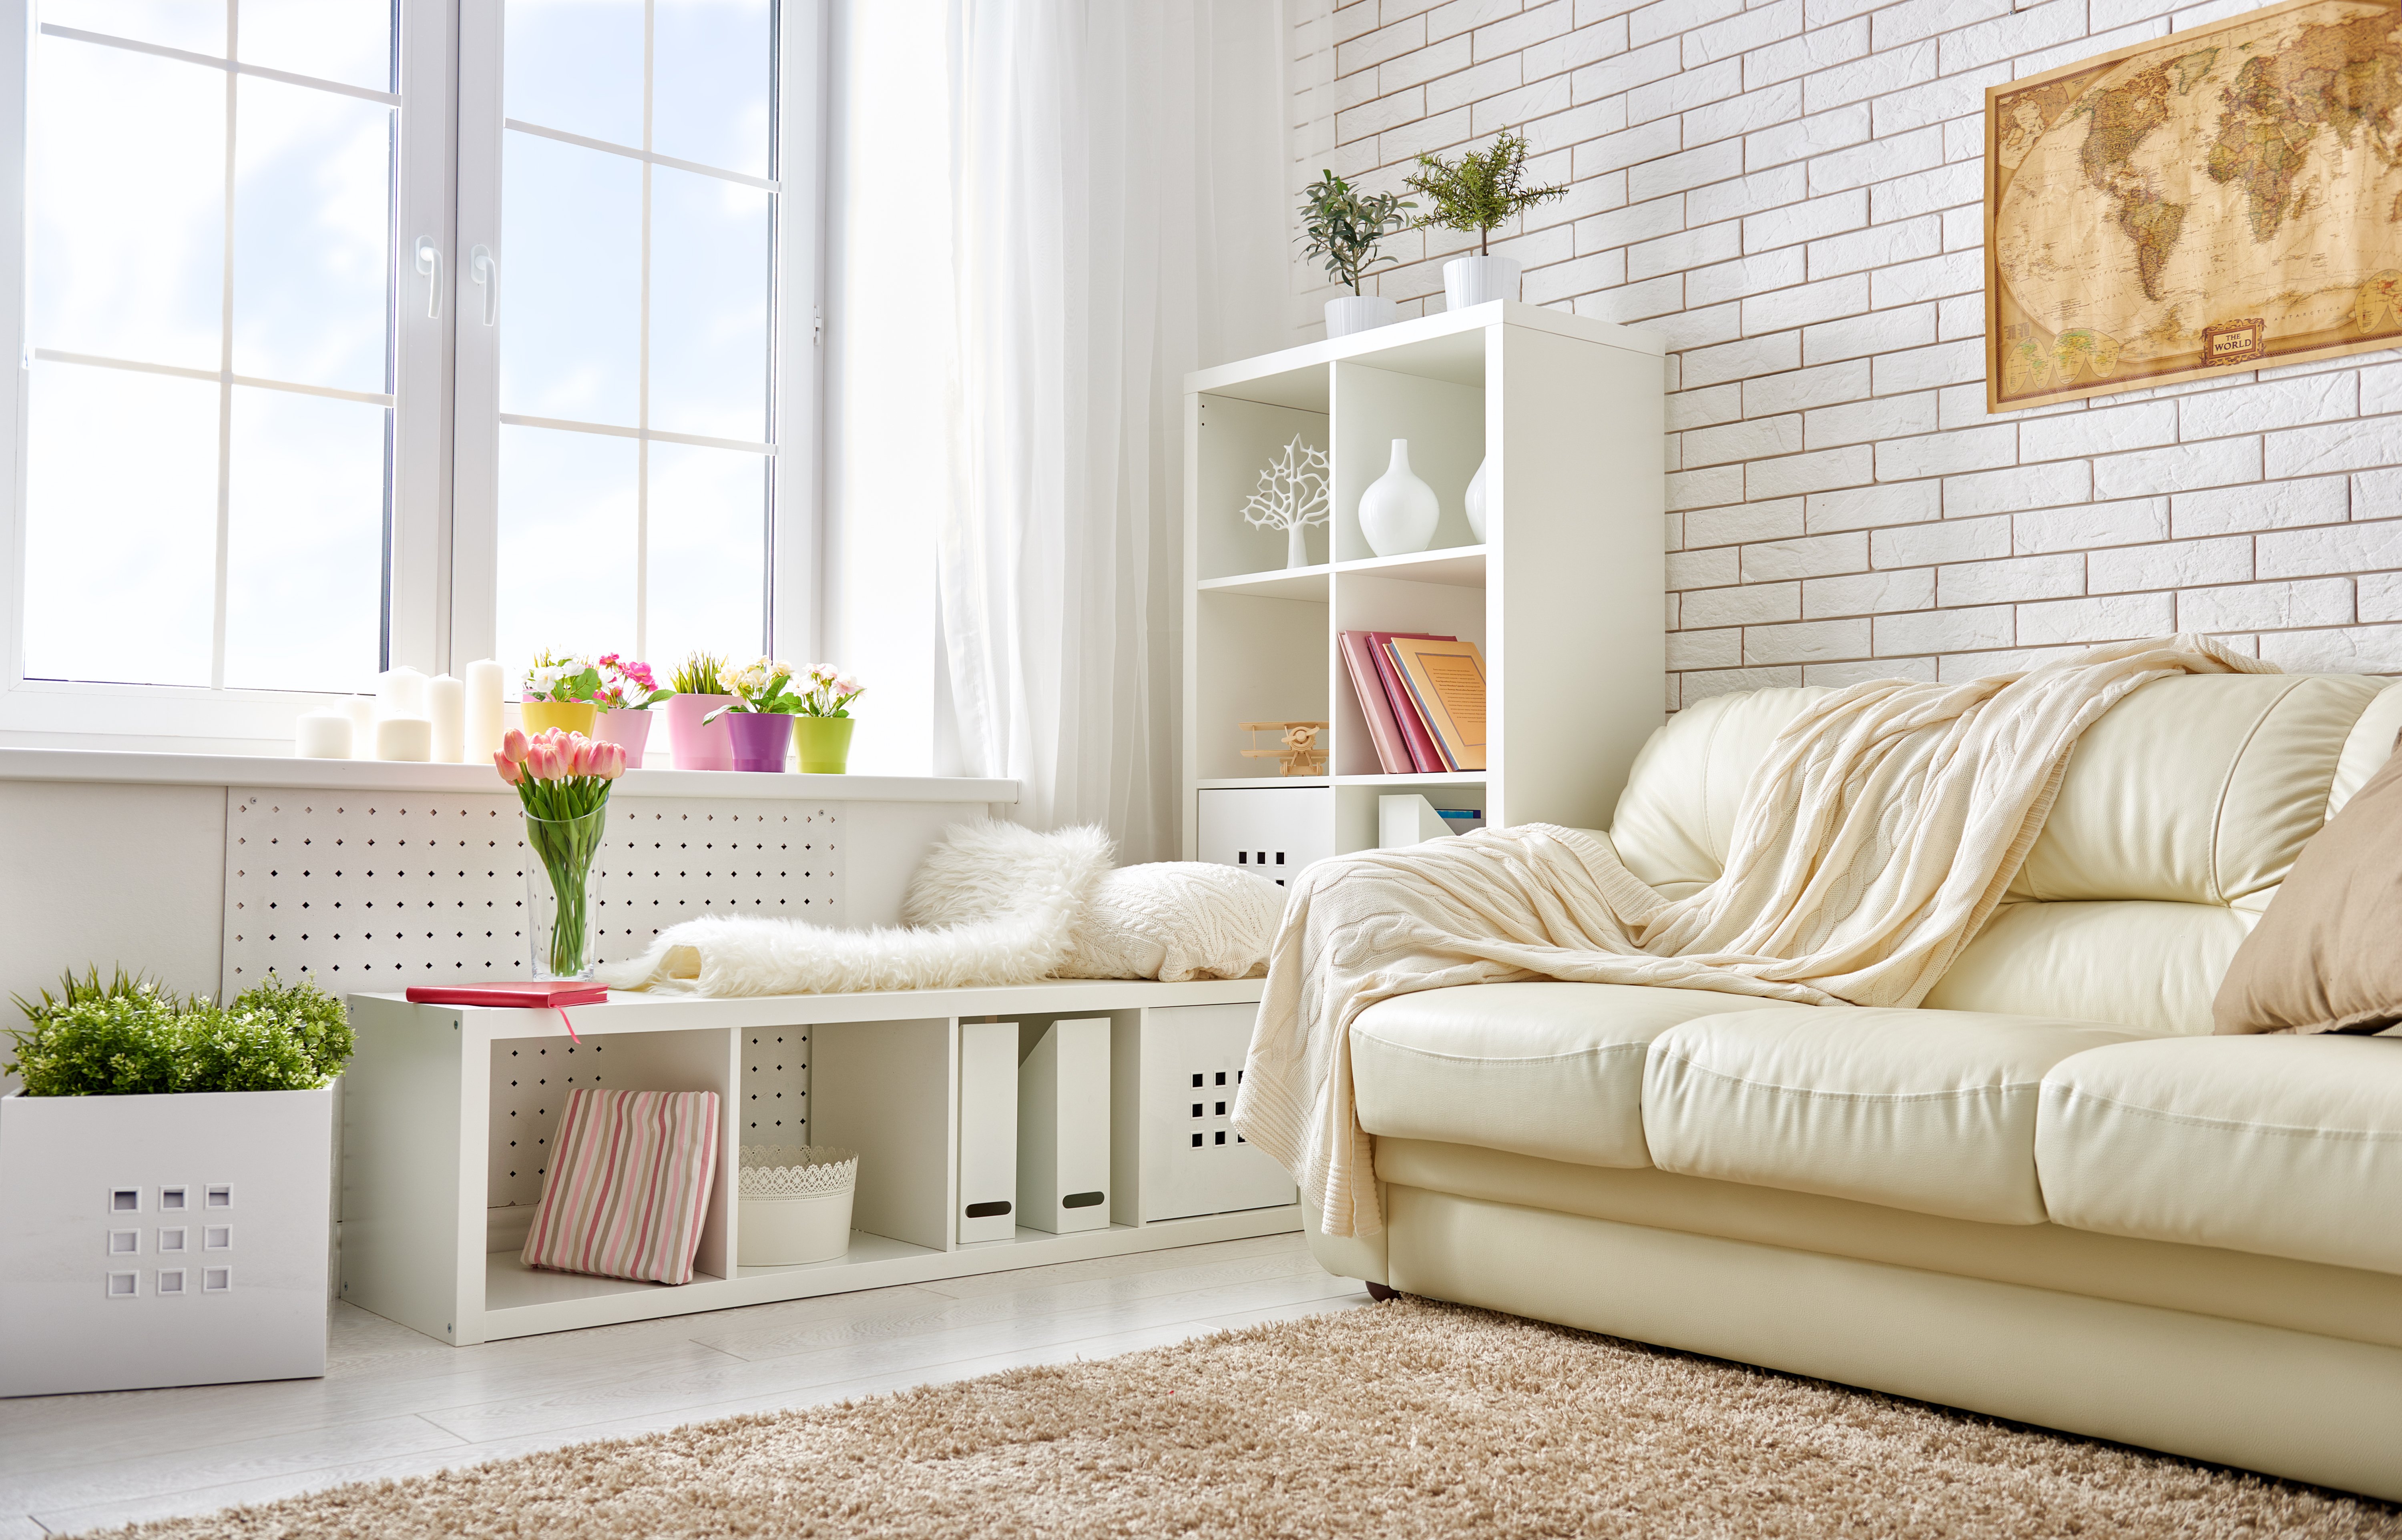 Bien ranger sa maison : les petits meubles utiles